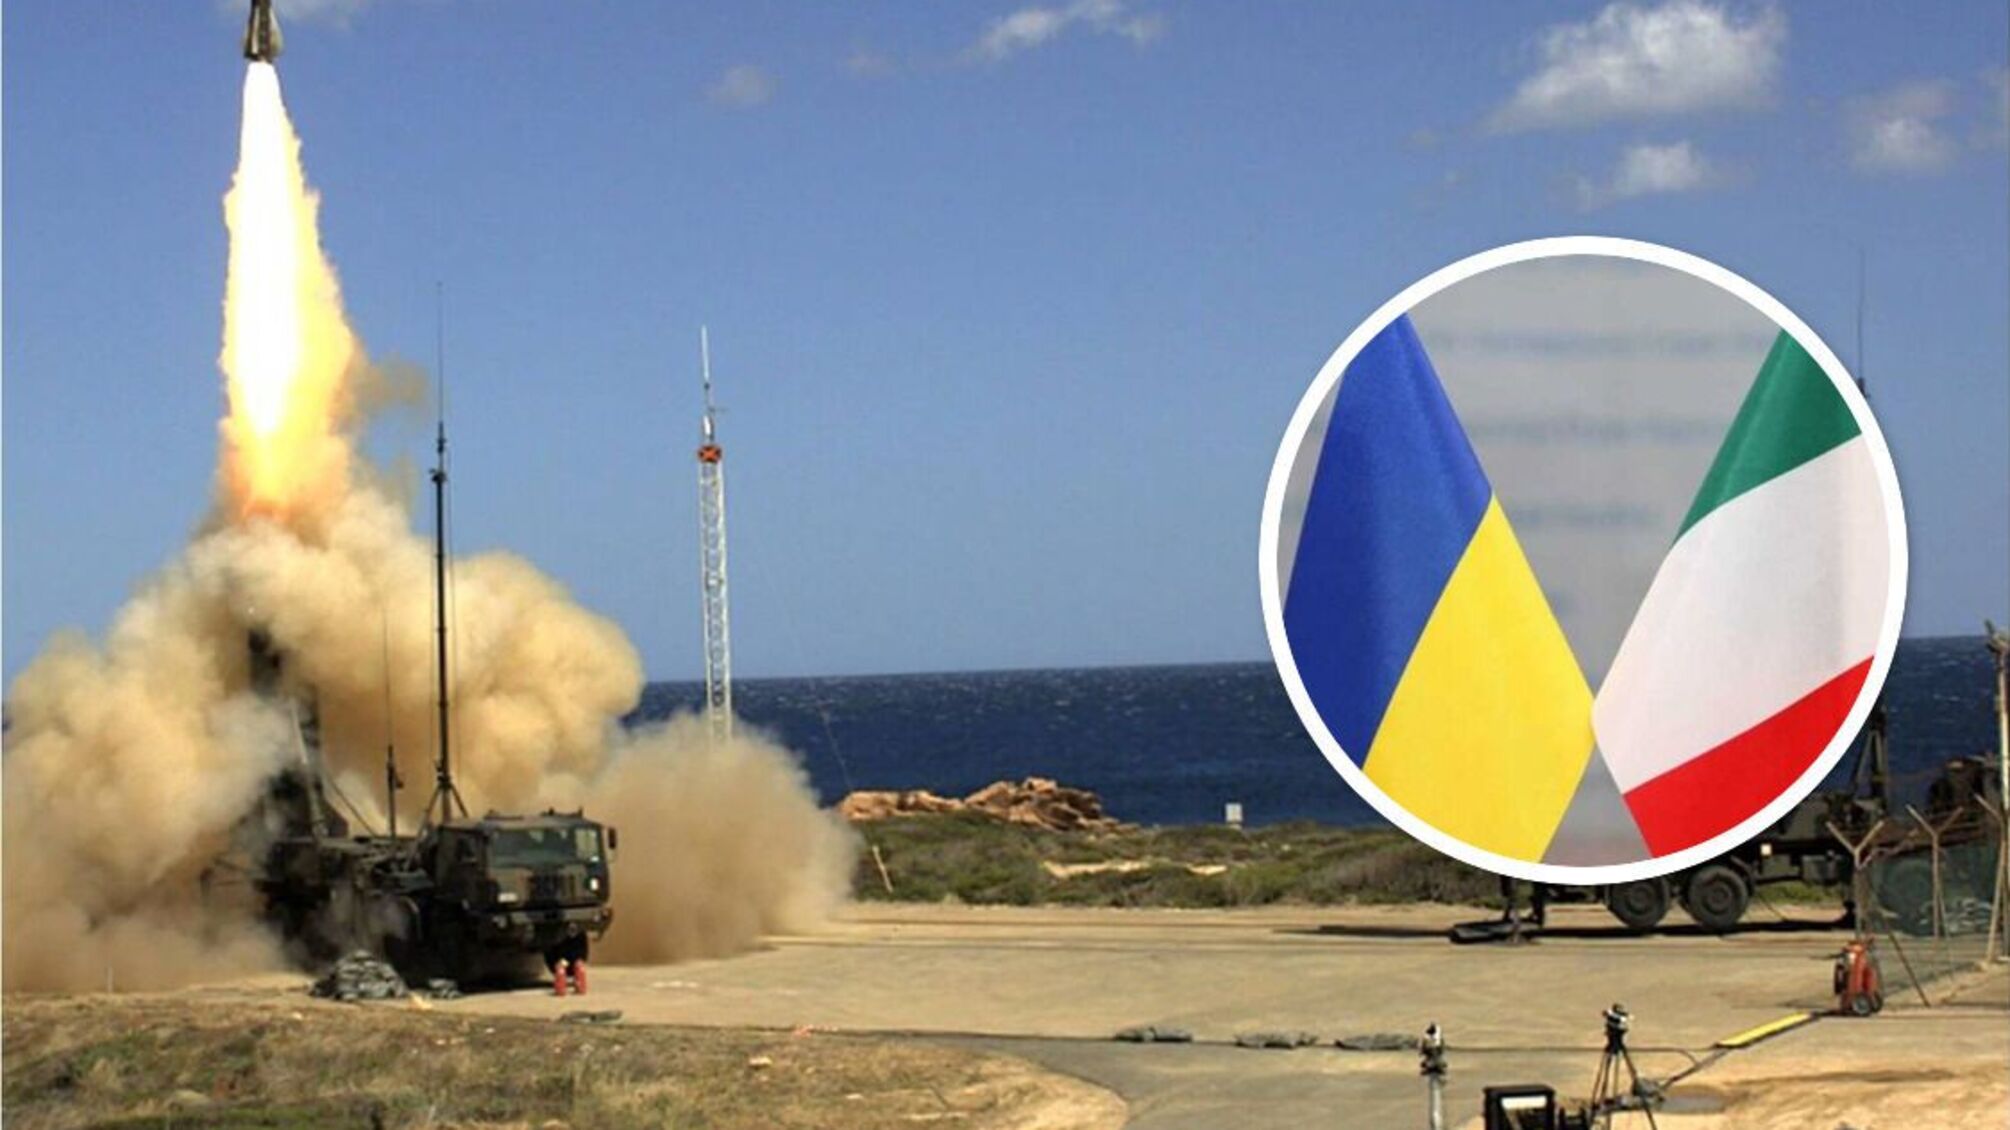 SAMP/T для України: Італія обіцяє передати комплекс, який здатен збивати балістичні ракети